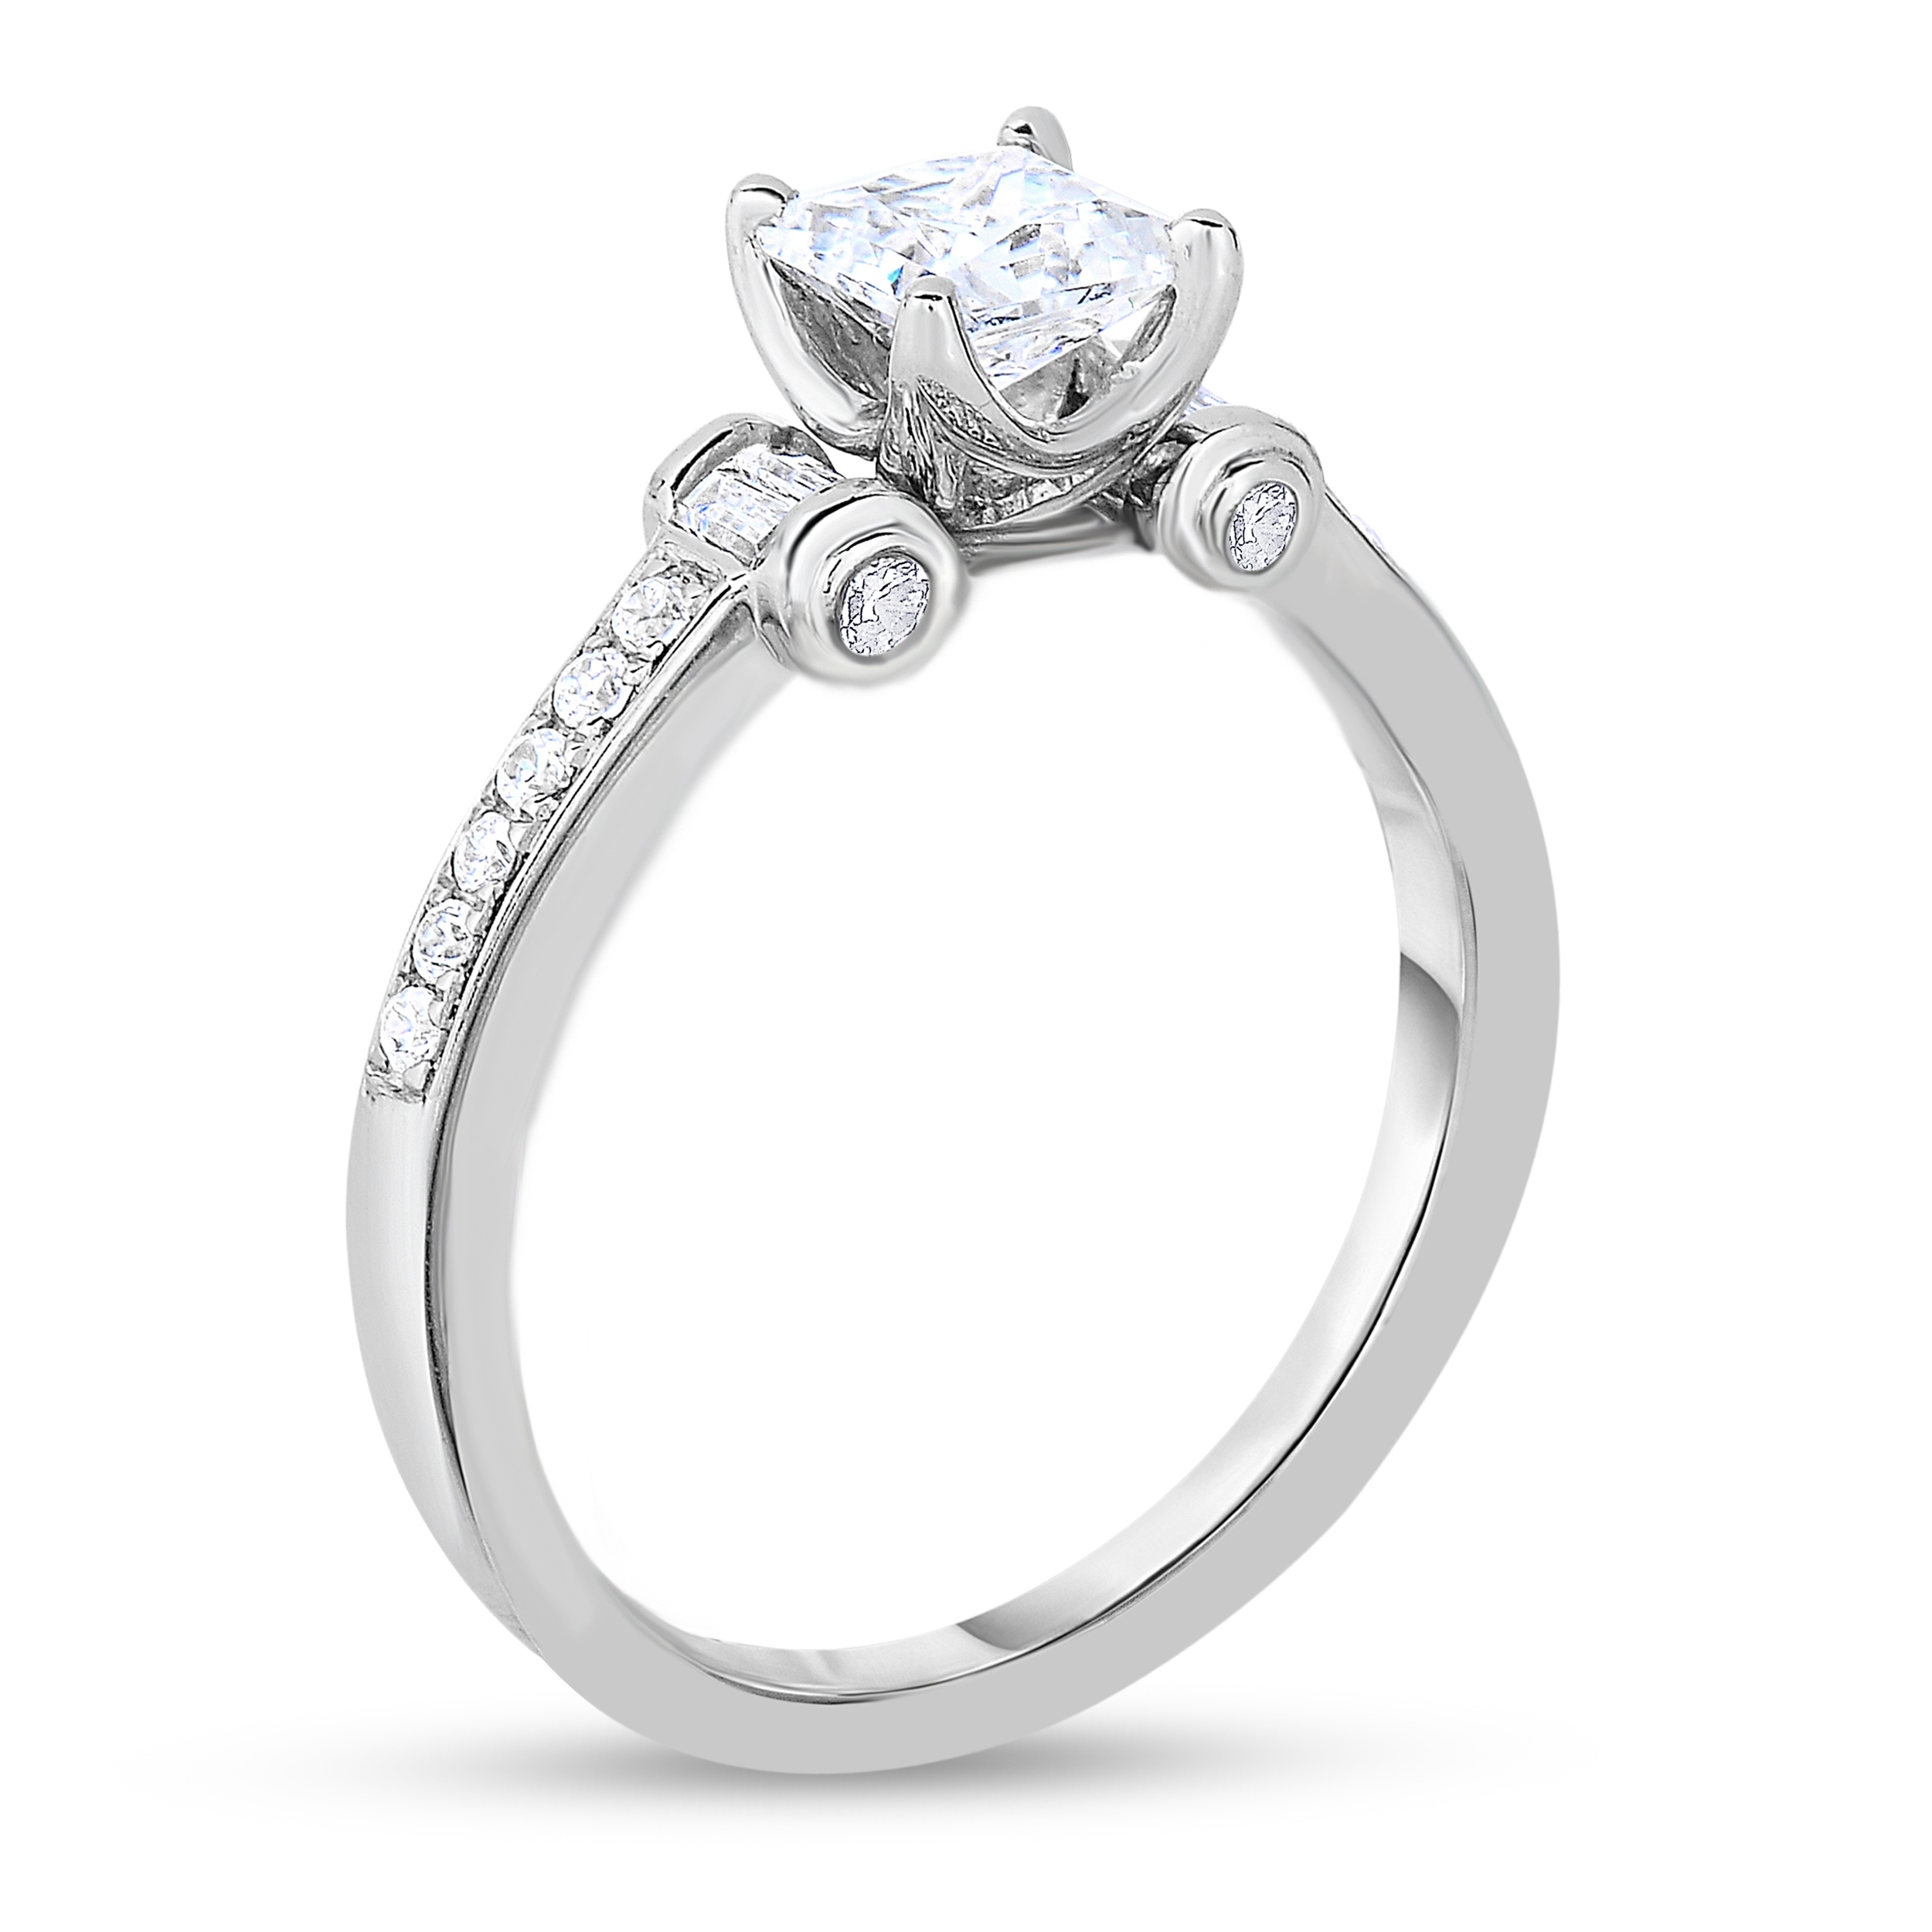 Diamond Ring 1-1/4 ct tw Princess/Round 14K White Gold 58rboYKg